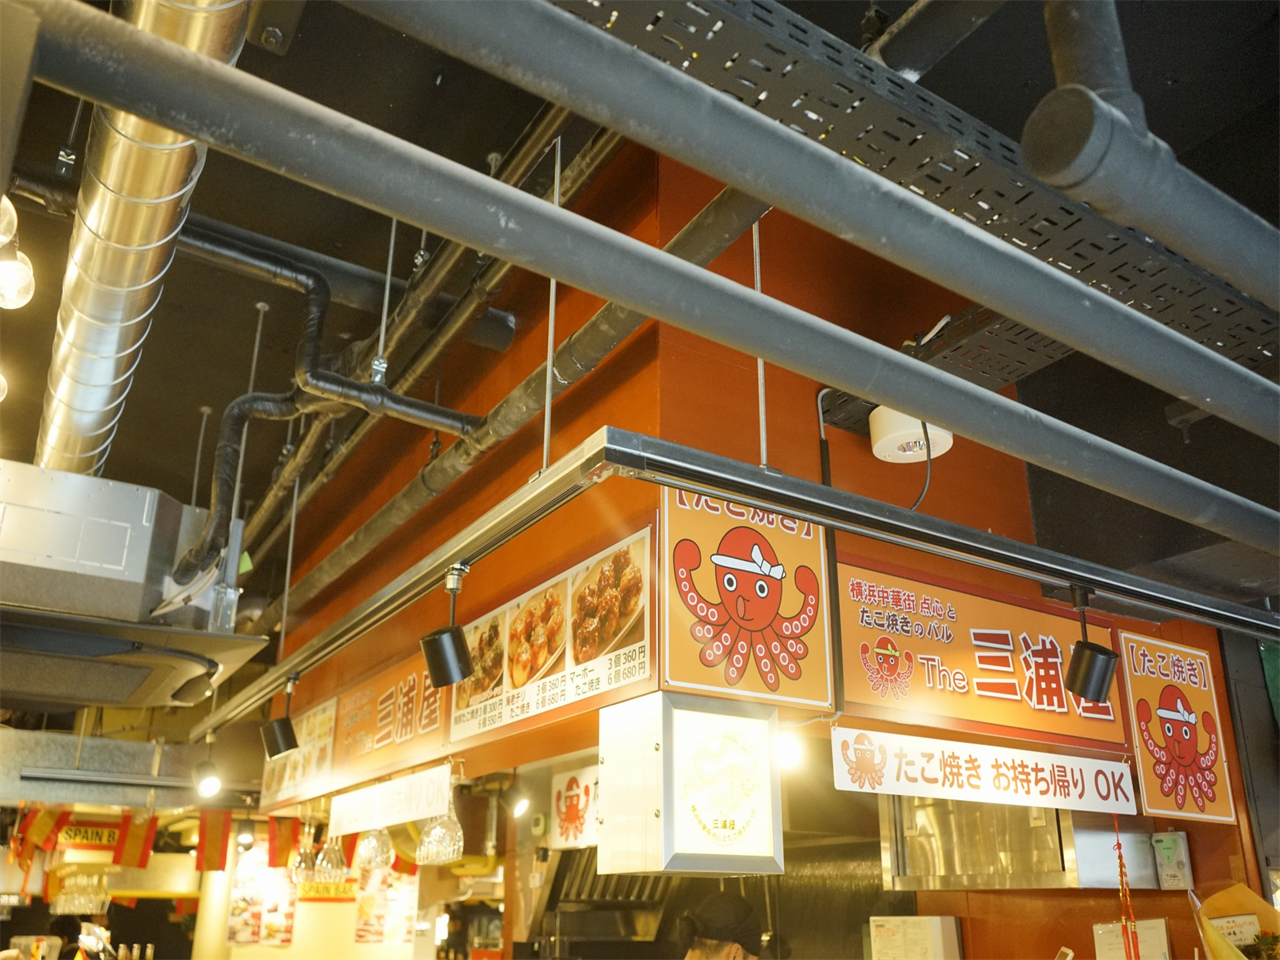 「The三浦屋」は、たこ焼きと中華料理が楽しめる日中折衷なお店